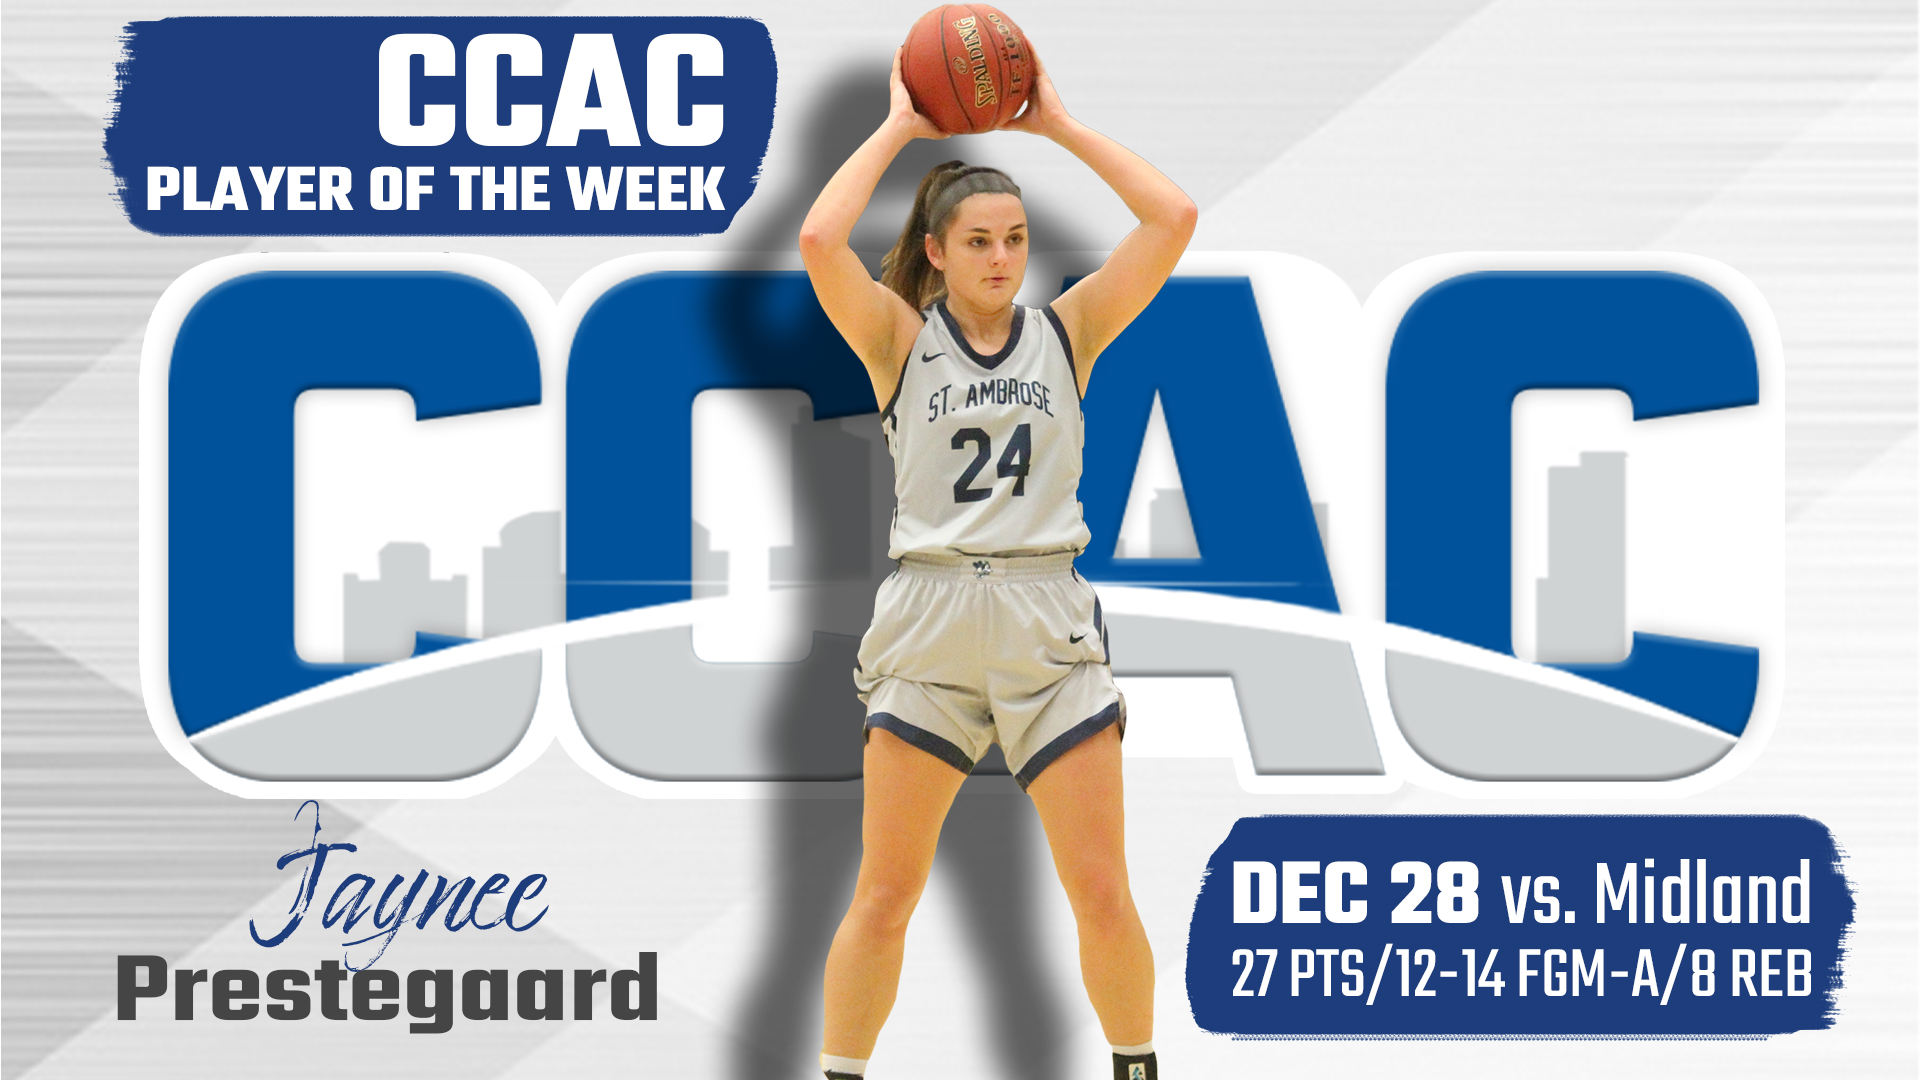 Jaynee Prestegaard named CCAC Player of the Week